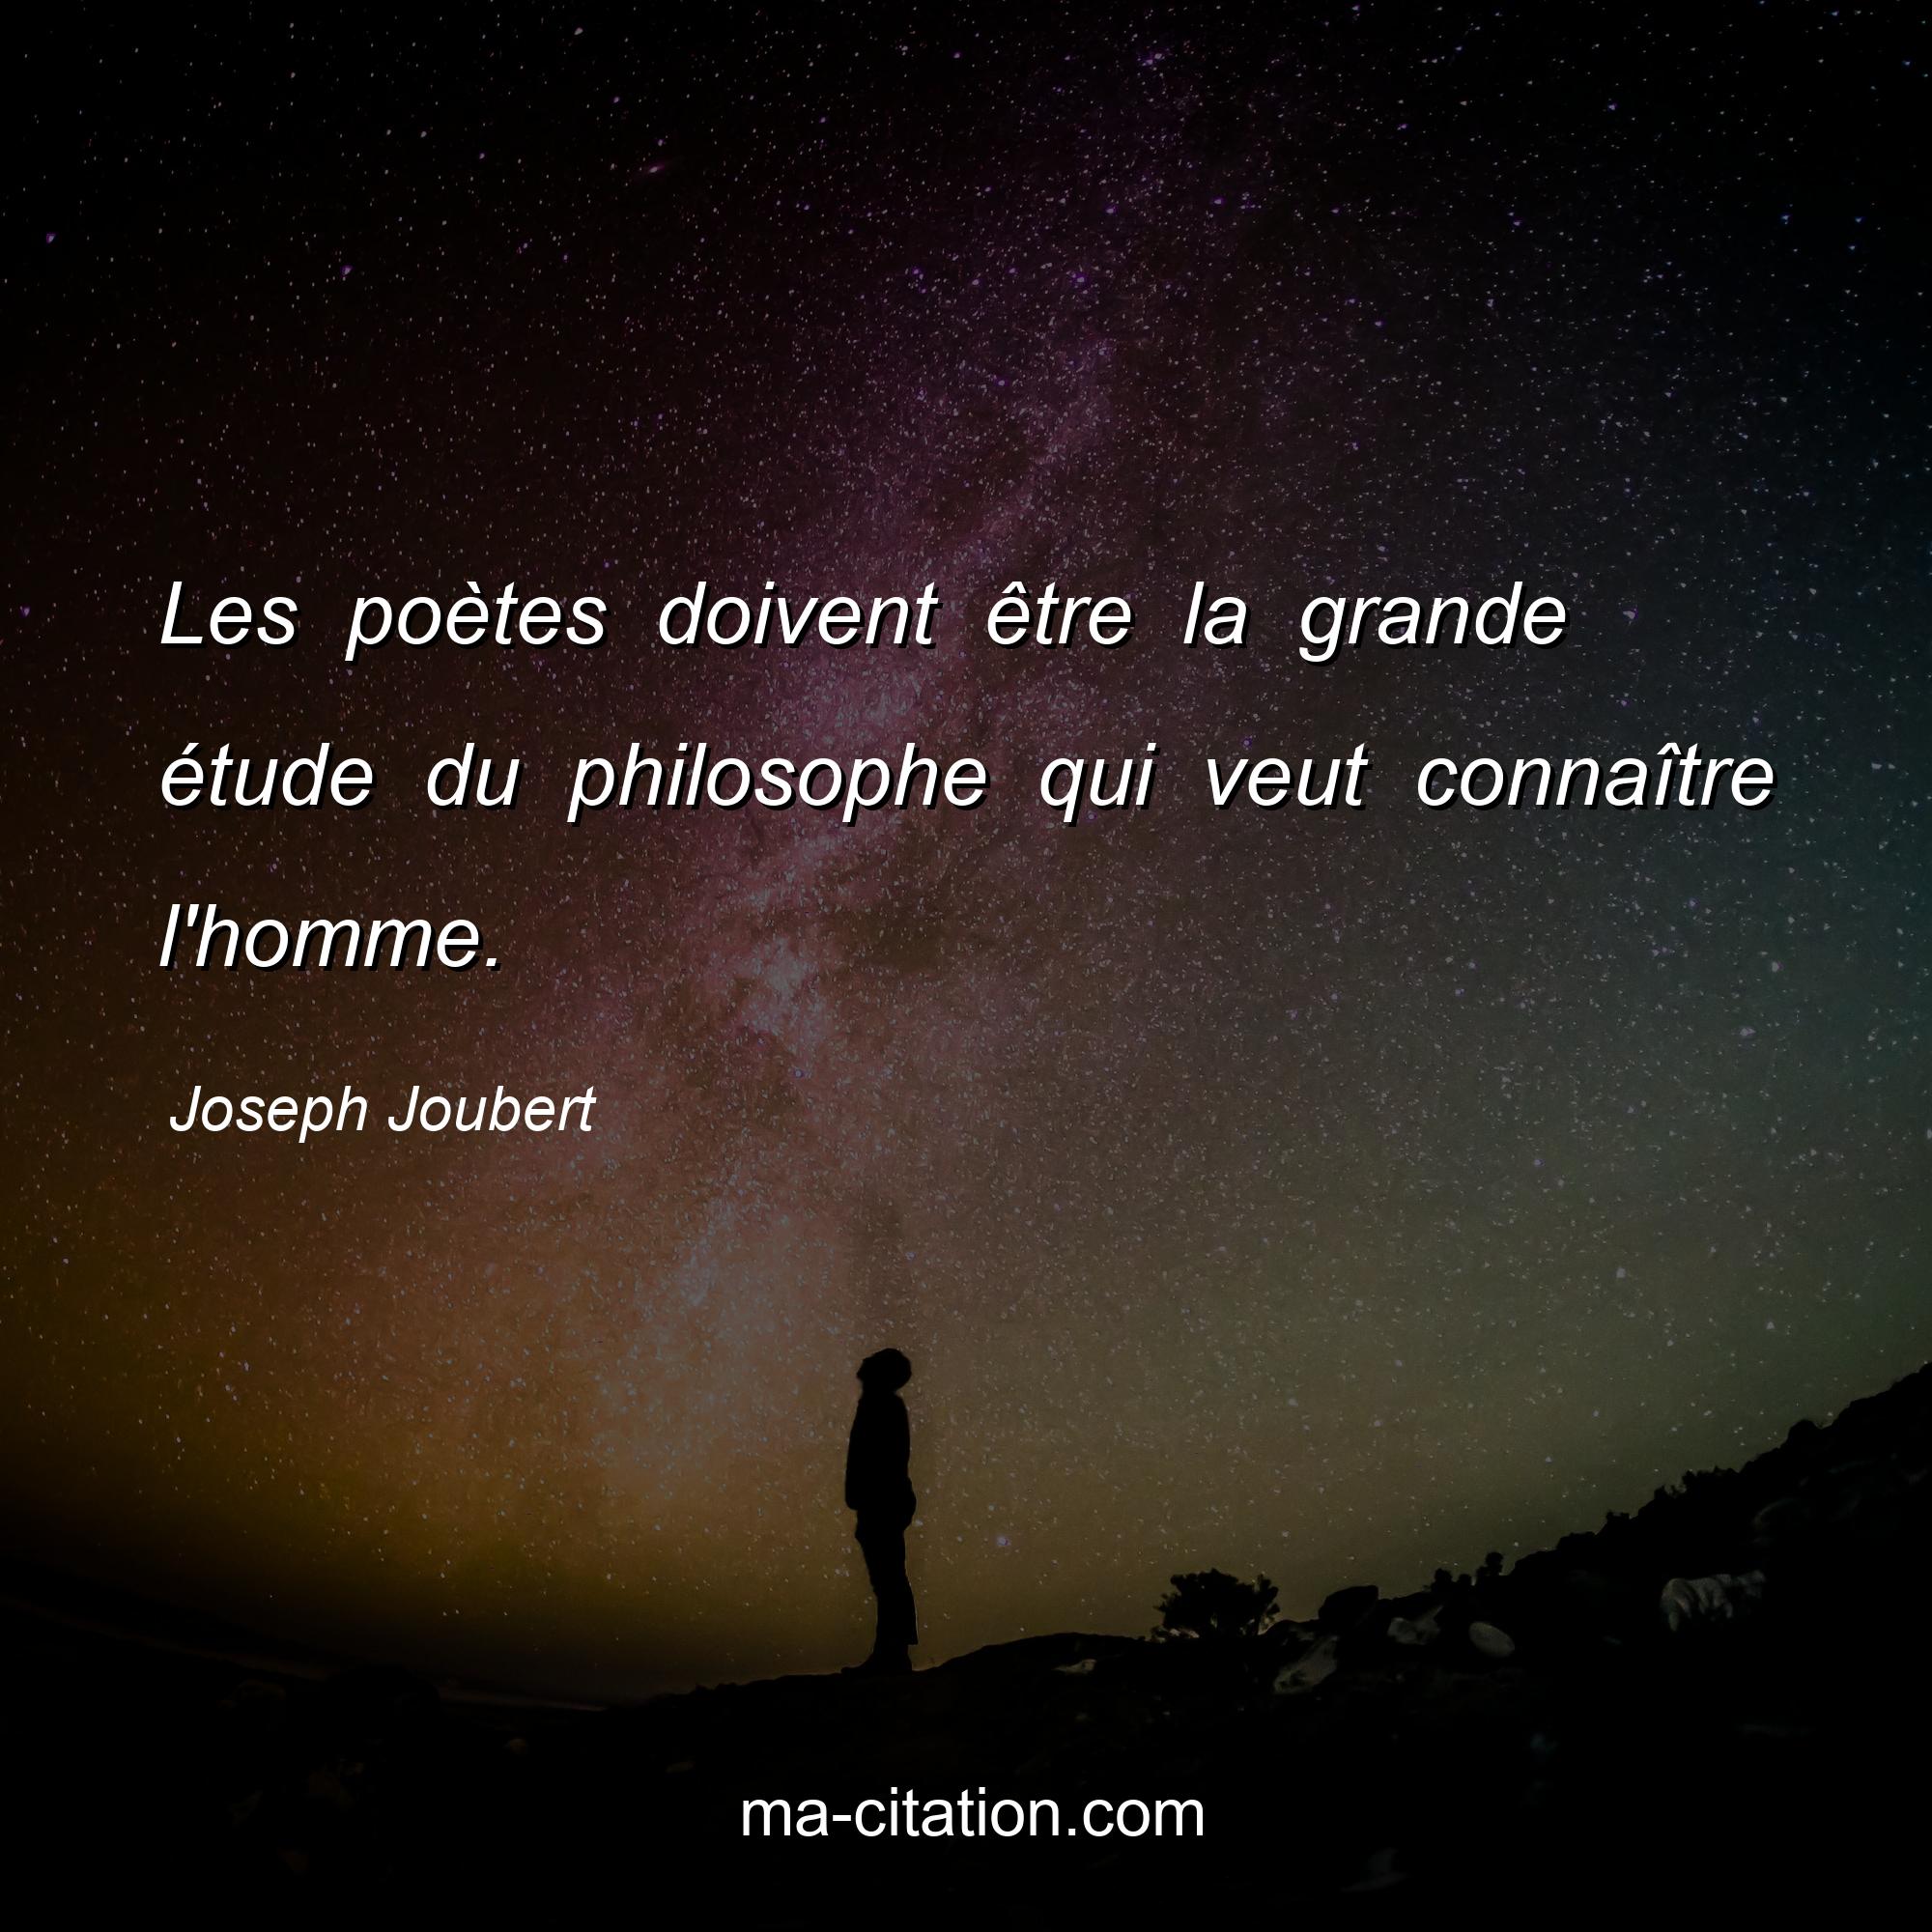 Joseph Joubert : Les poètes doivent être la grande étude du philosophe qui veut connaître l'homme.